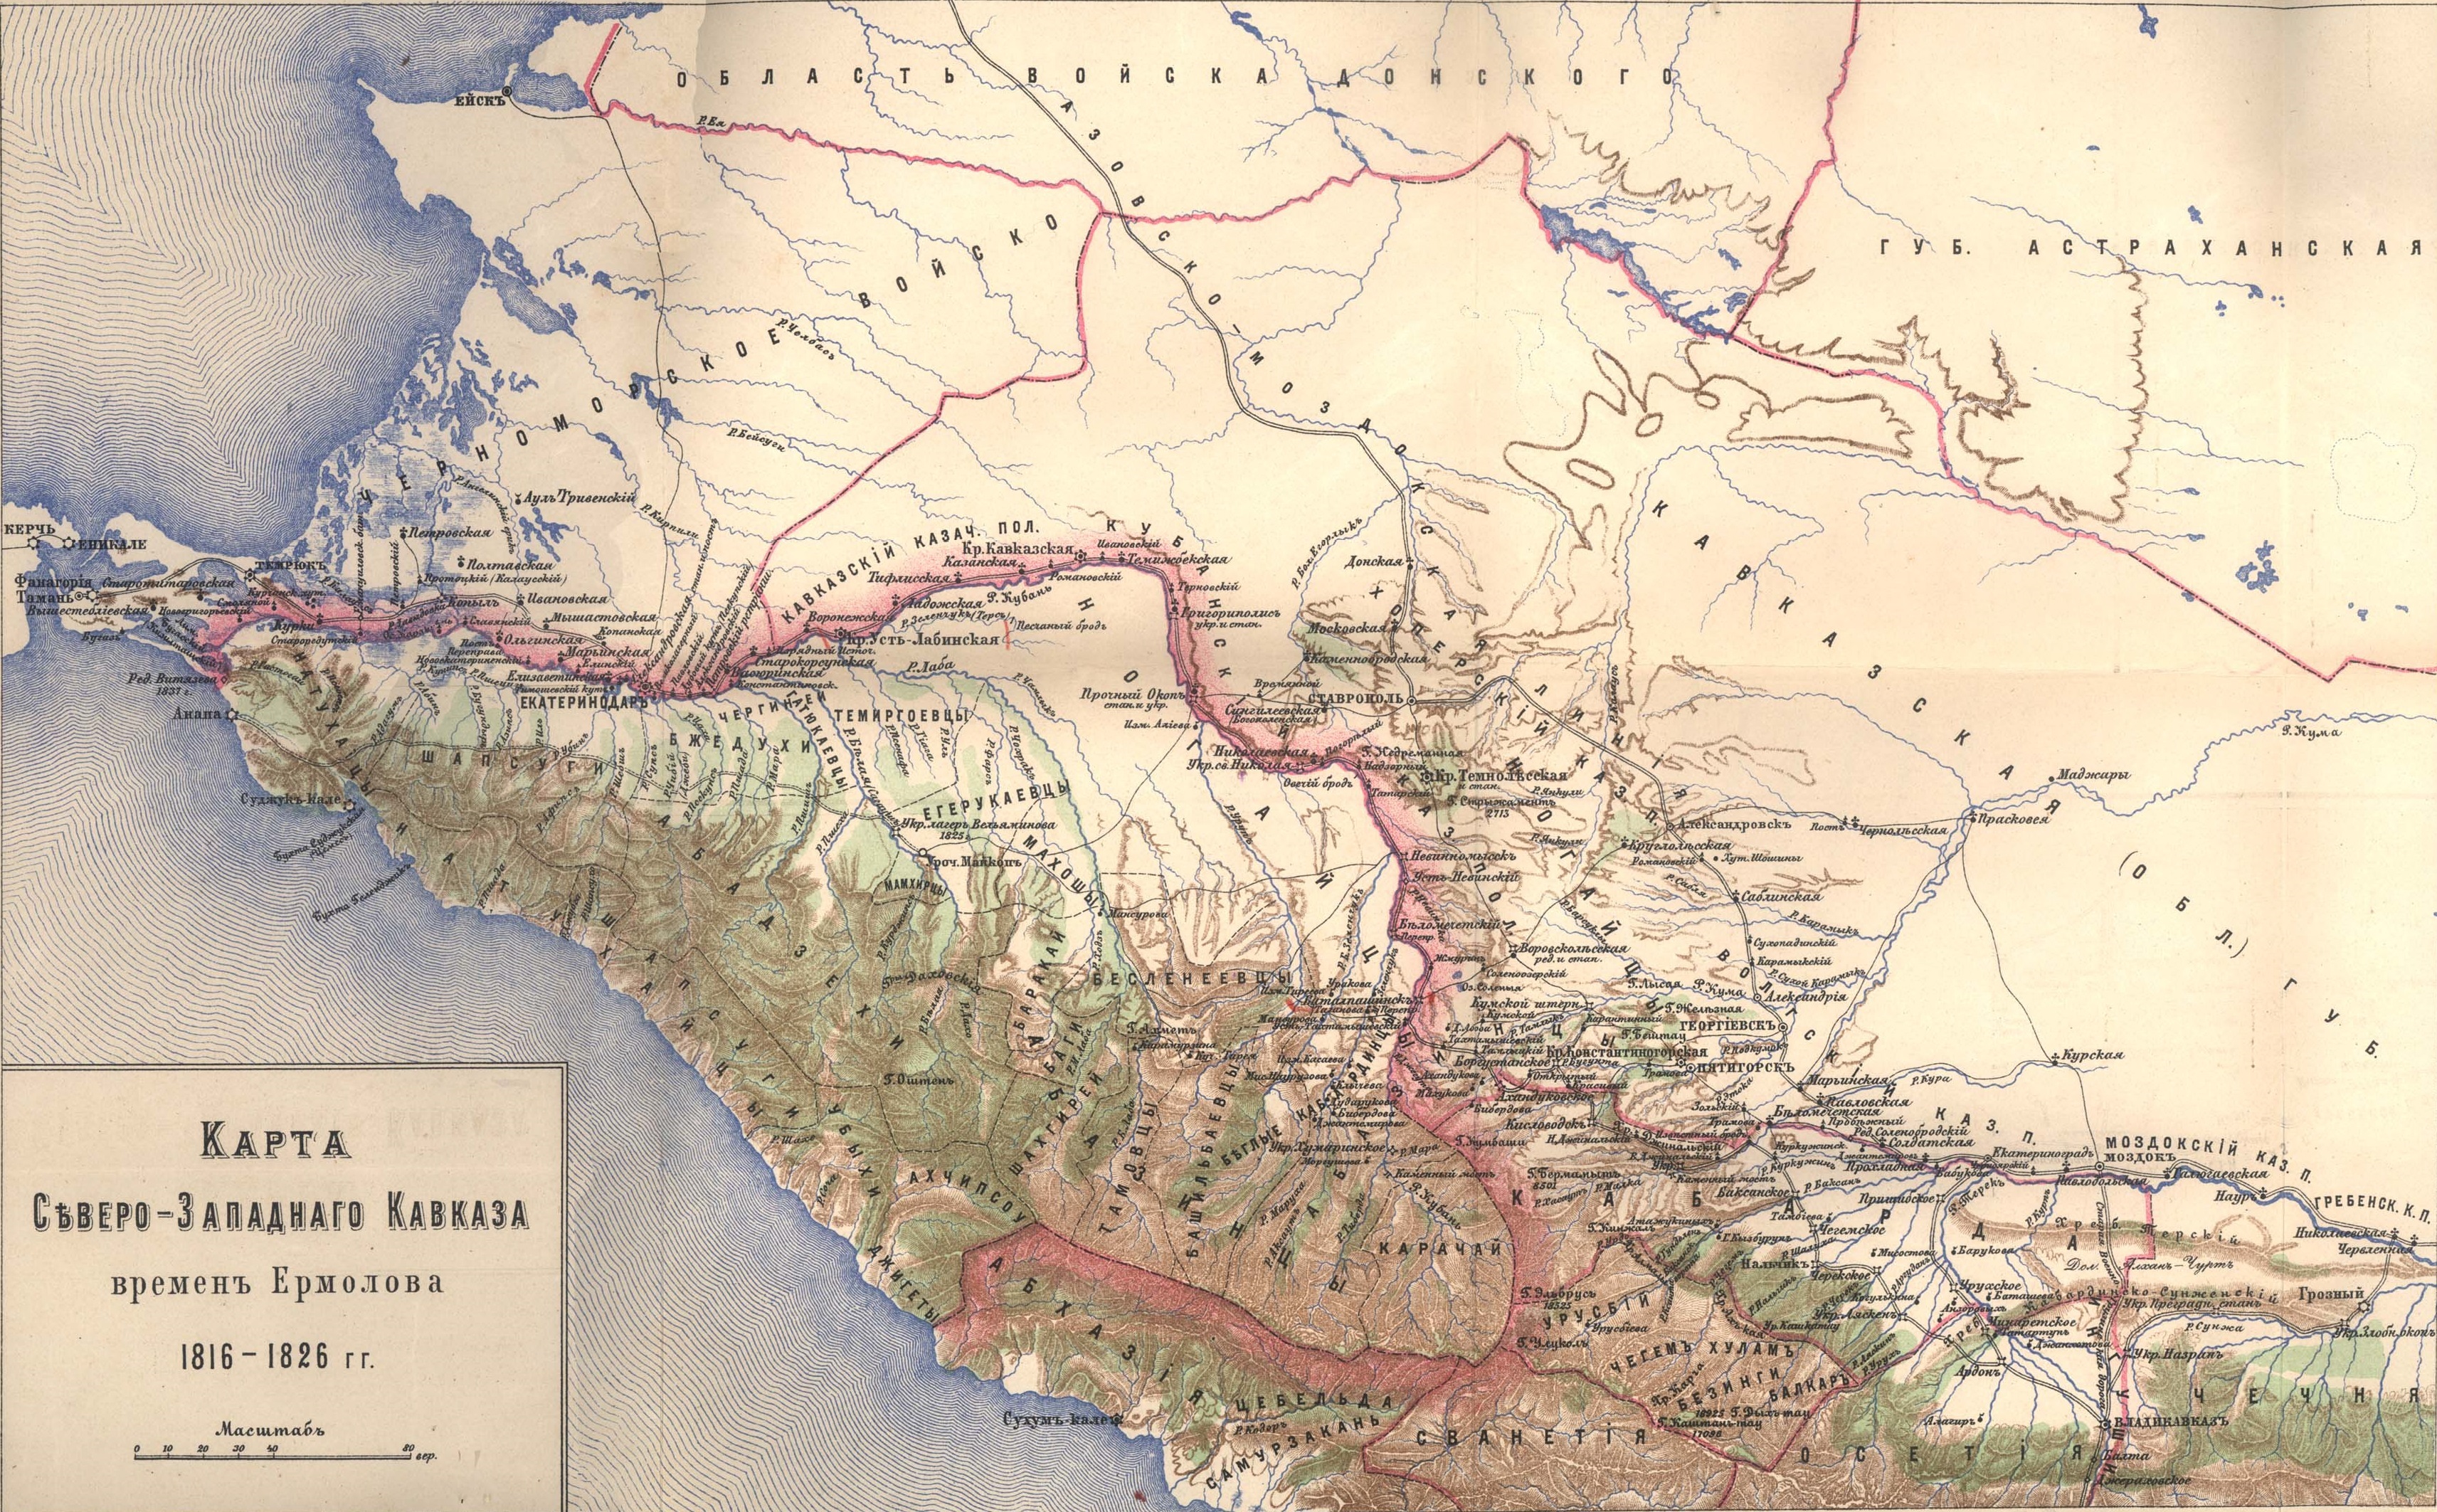 Map of Noth-West Caucasus, 1816-1826